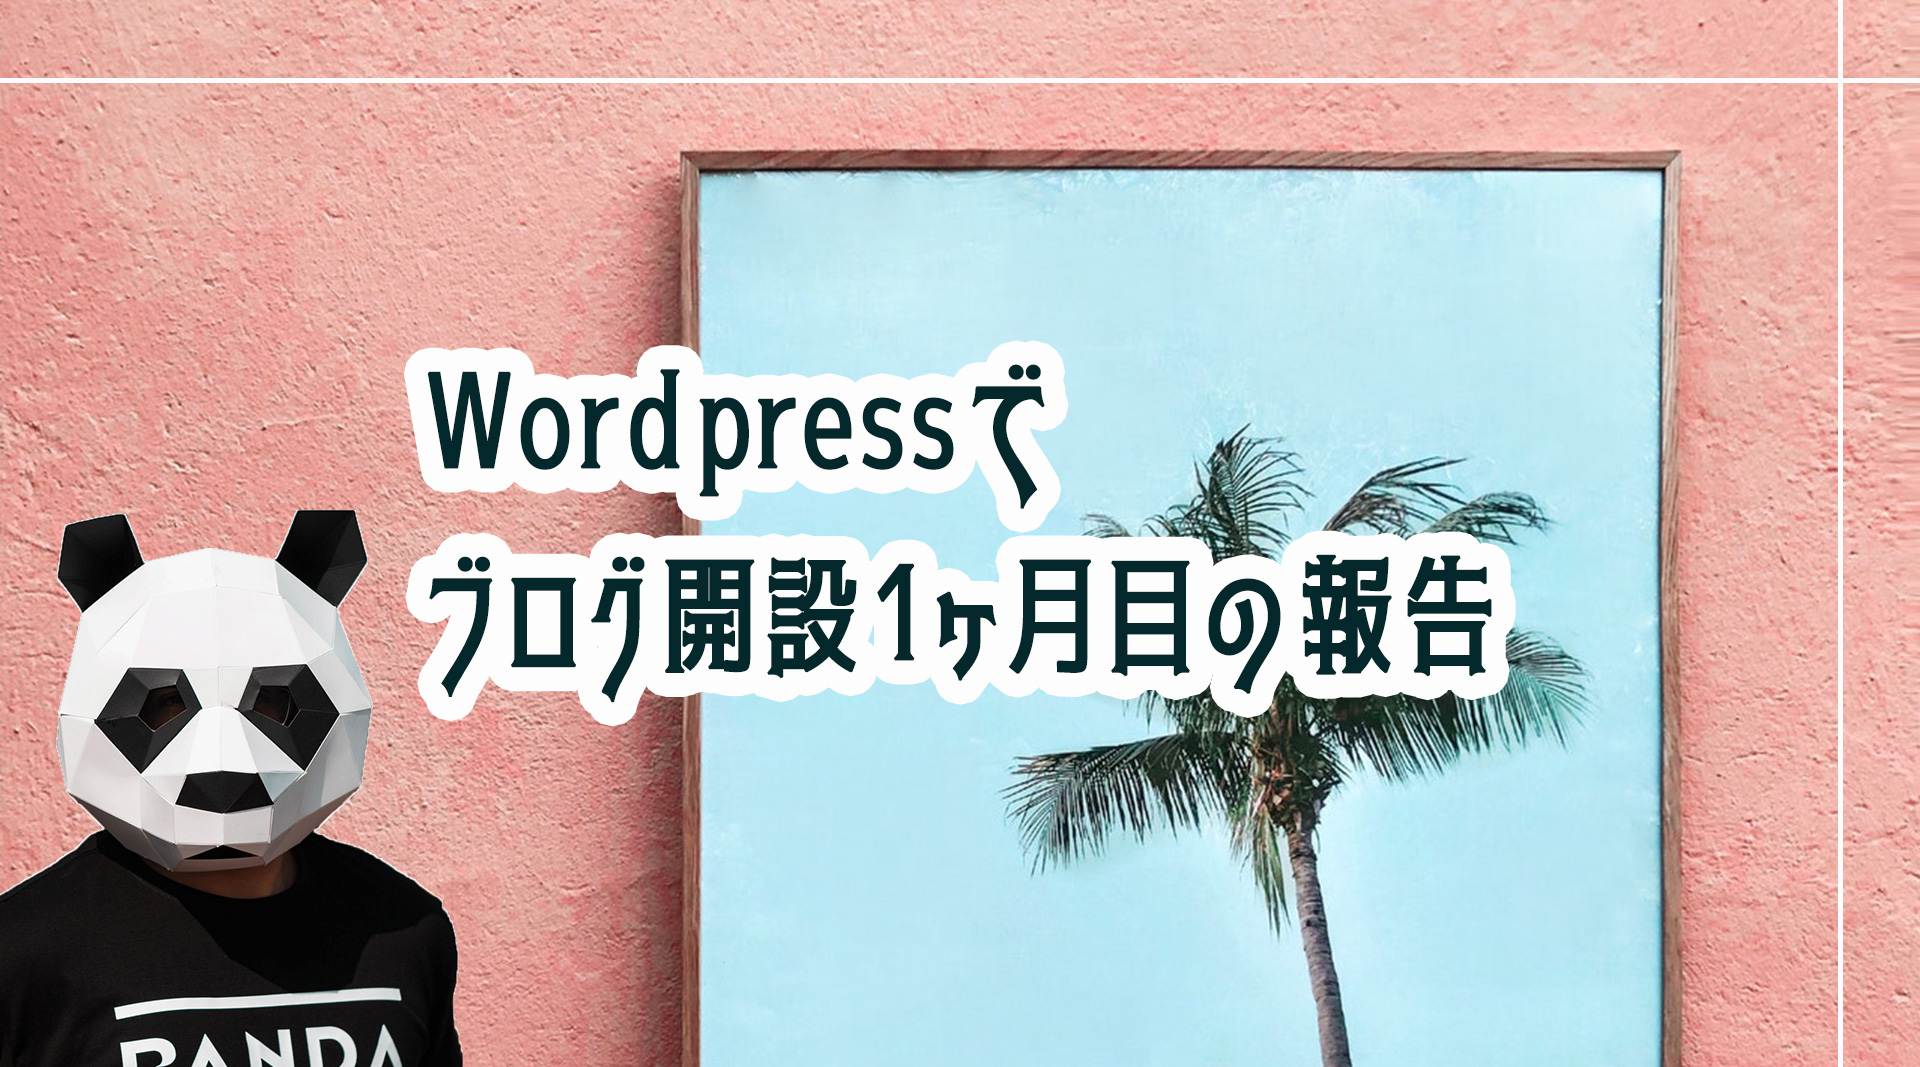 Wordpressでブログ開設1ヶ月目の報告